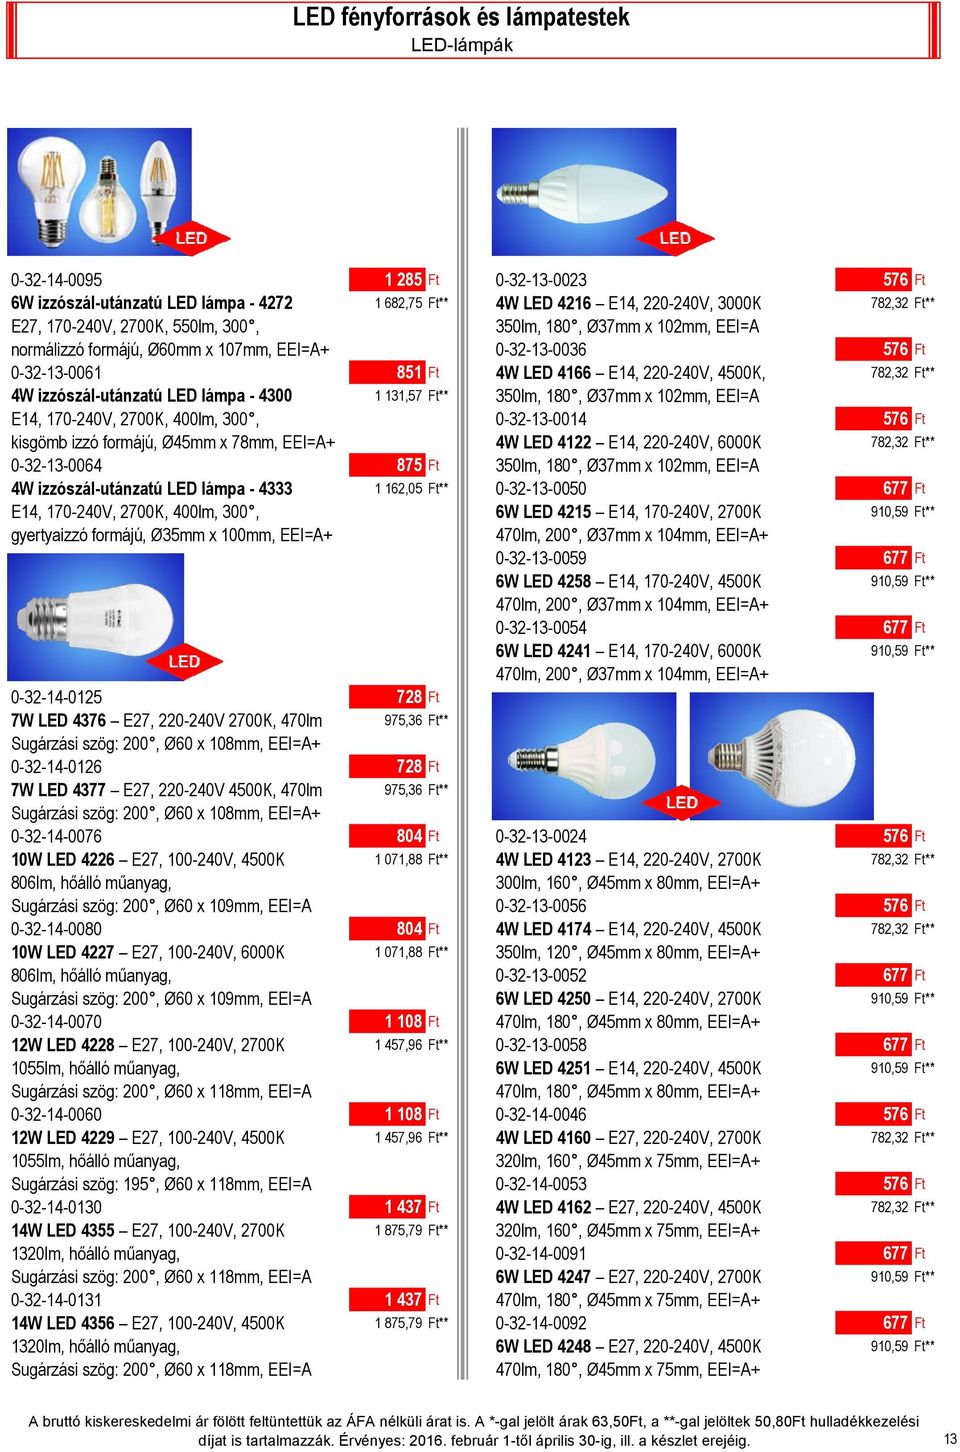 izzószál-utánzatú LED lámpa - 4300 1 131,57 Ft** 350lm, 180, Ø37mm x 102mm, EEI=A E14, 170-240V, 2700K, 400lm, 300, 0-32-13-0014 576 Ft kisgömb izzó formájú, Ø45mm x 78mm, EEI=A+ 4W LED 4122 E14,